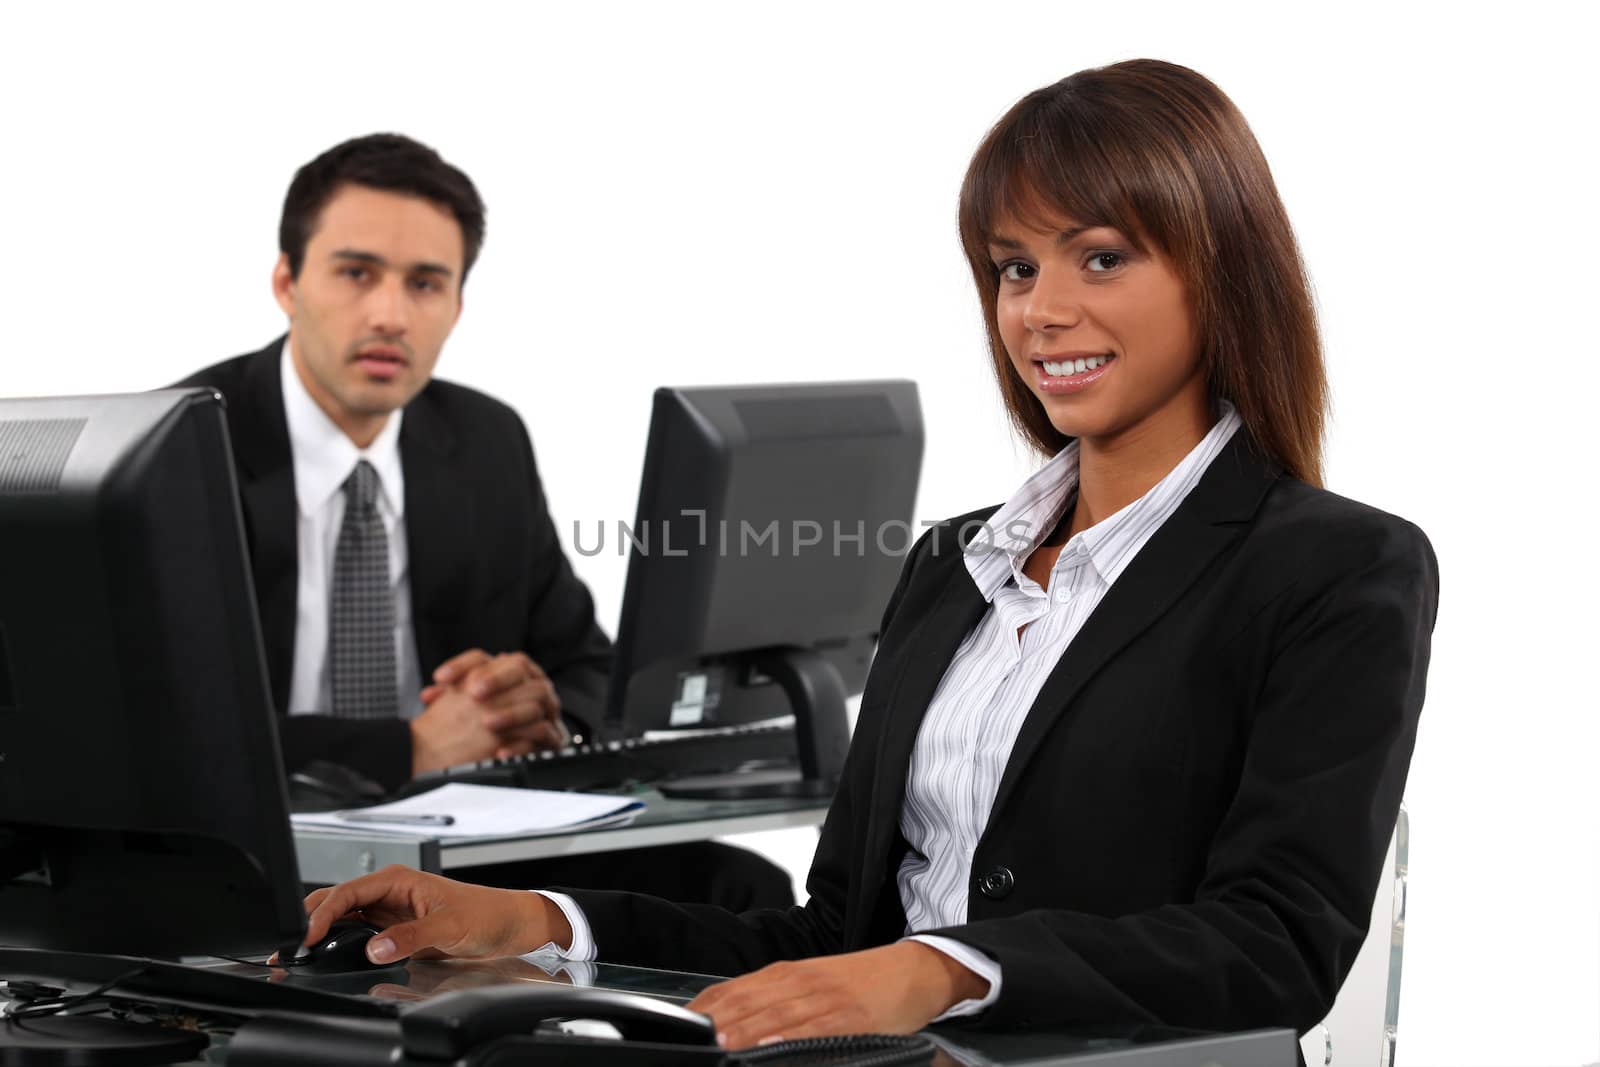 Business professionals working behind their desks